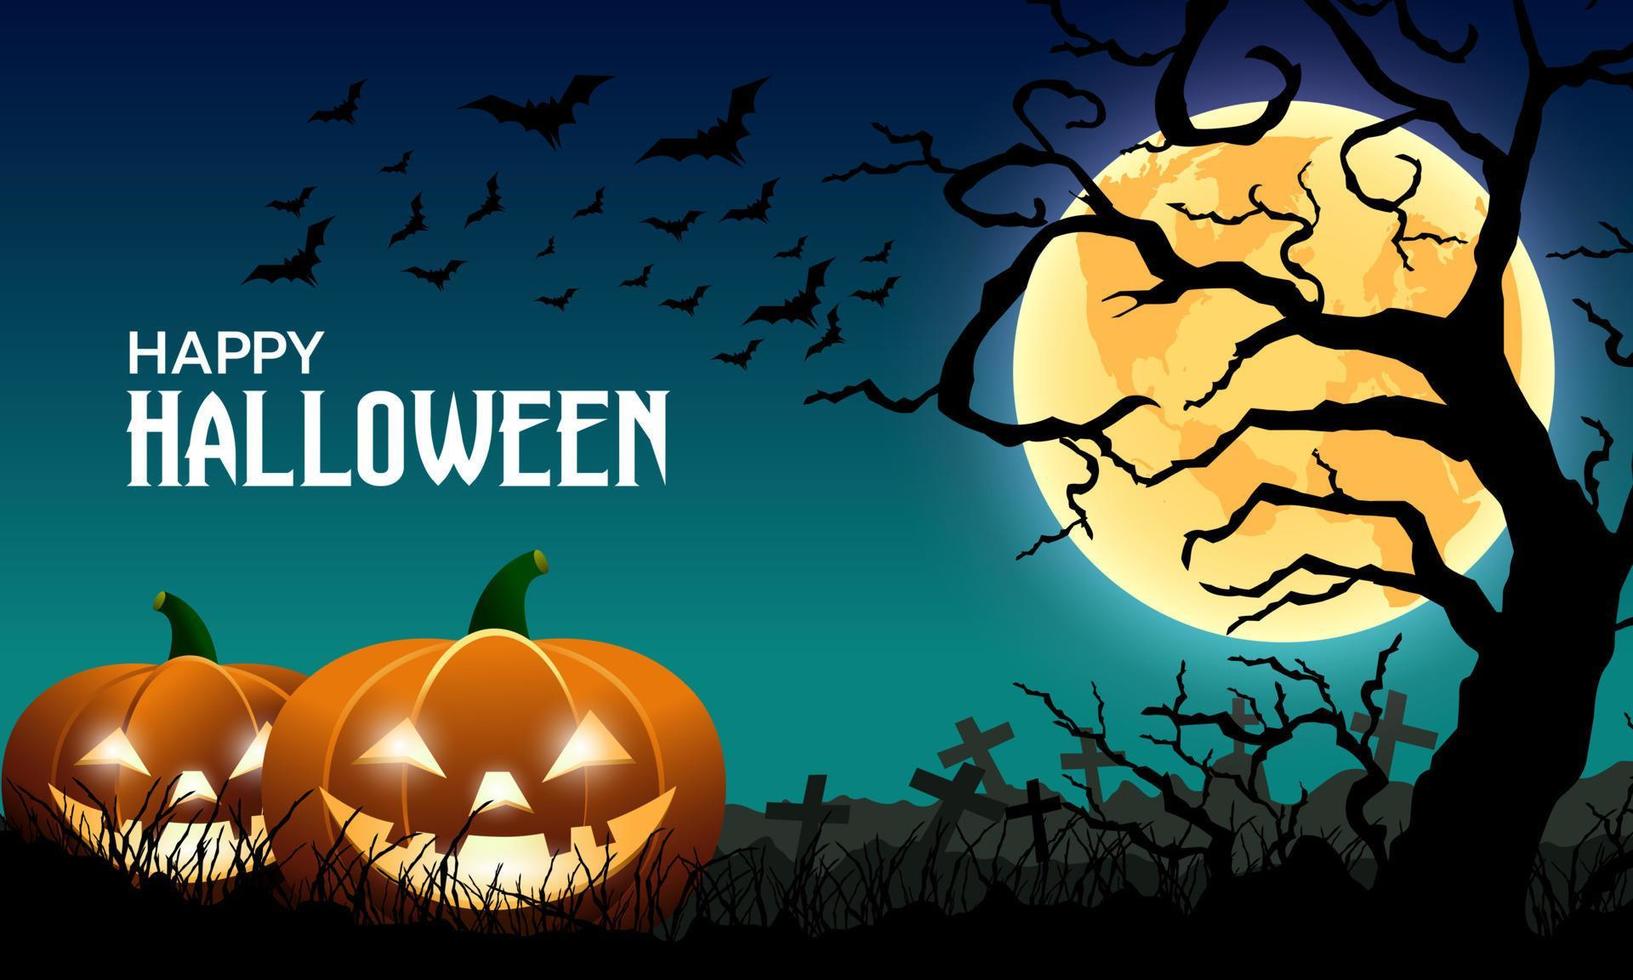 feliz halloween noche oscura fondo luna llena con calabaza, cementerio, árboles y murciélagos voladores. ilustración vectorial. vector